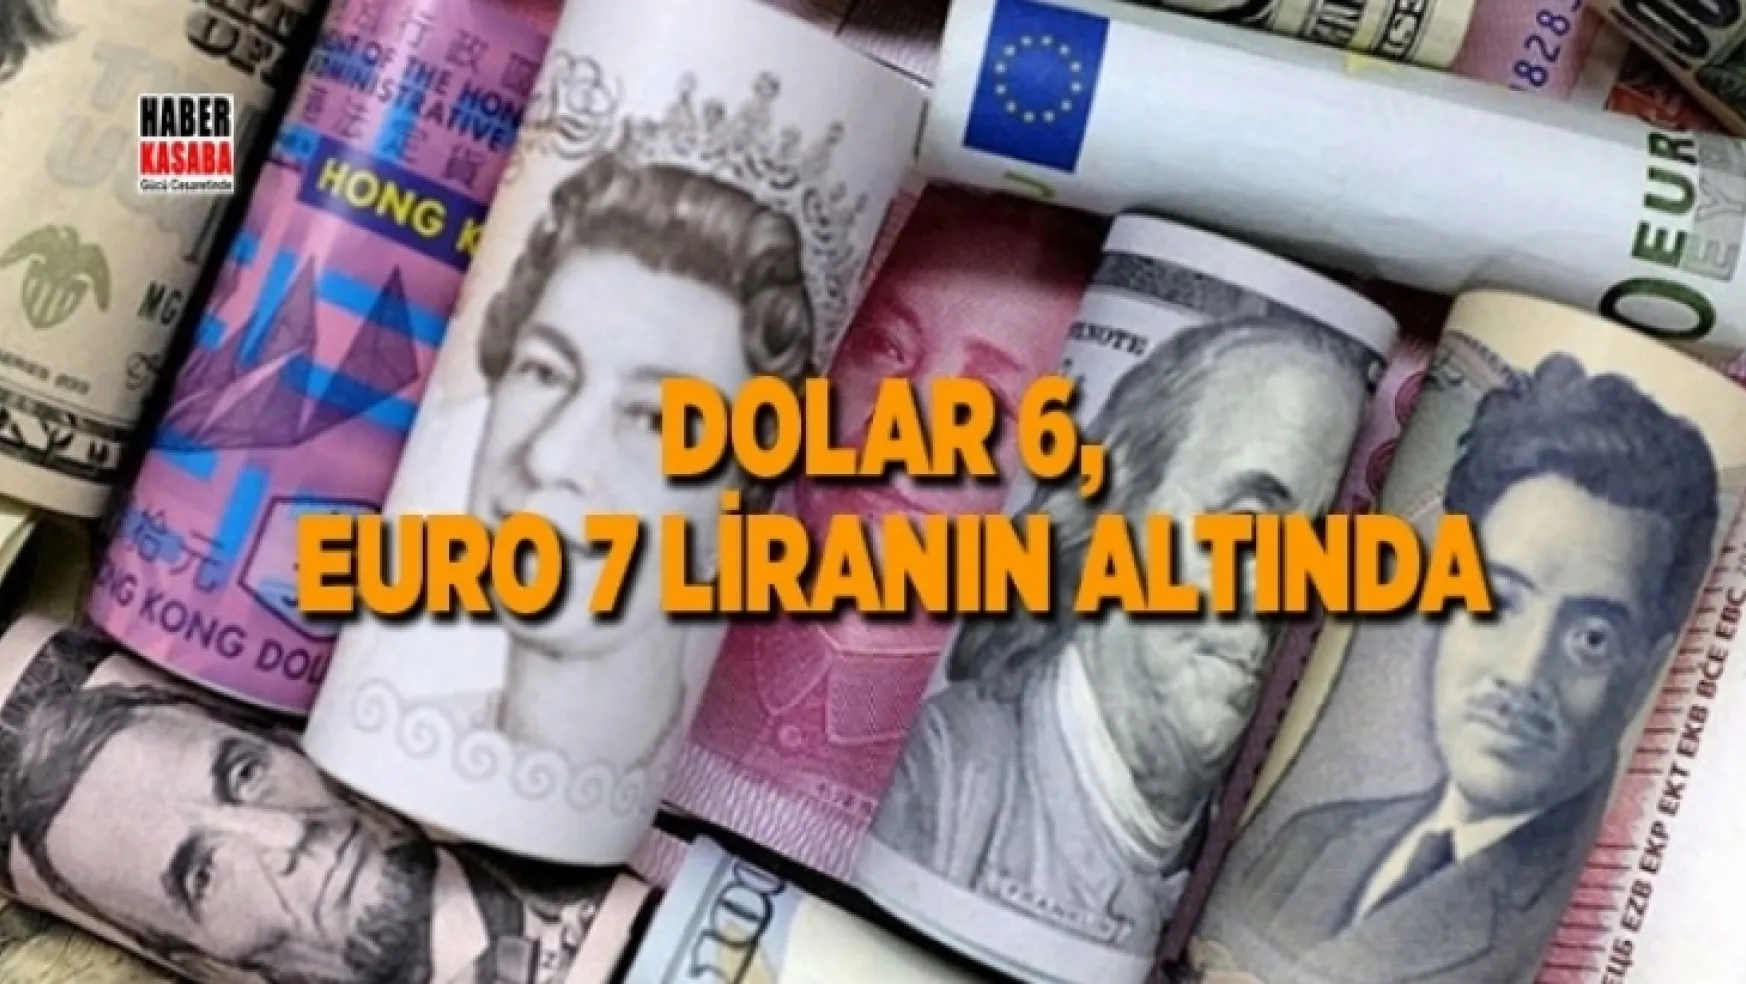 Euro 7, Dolar 6  liranın altında